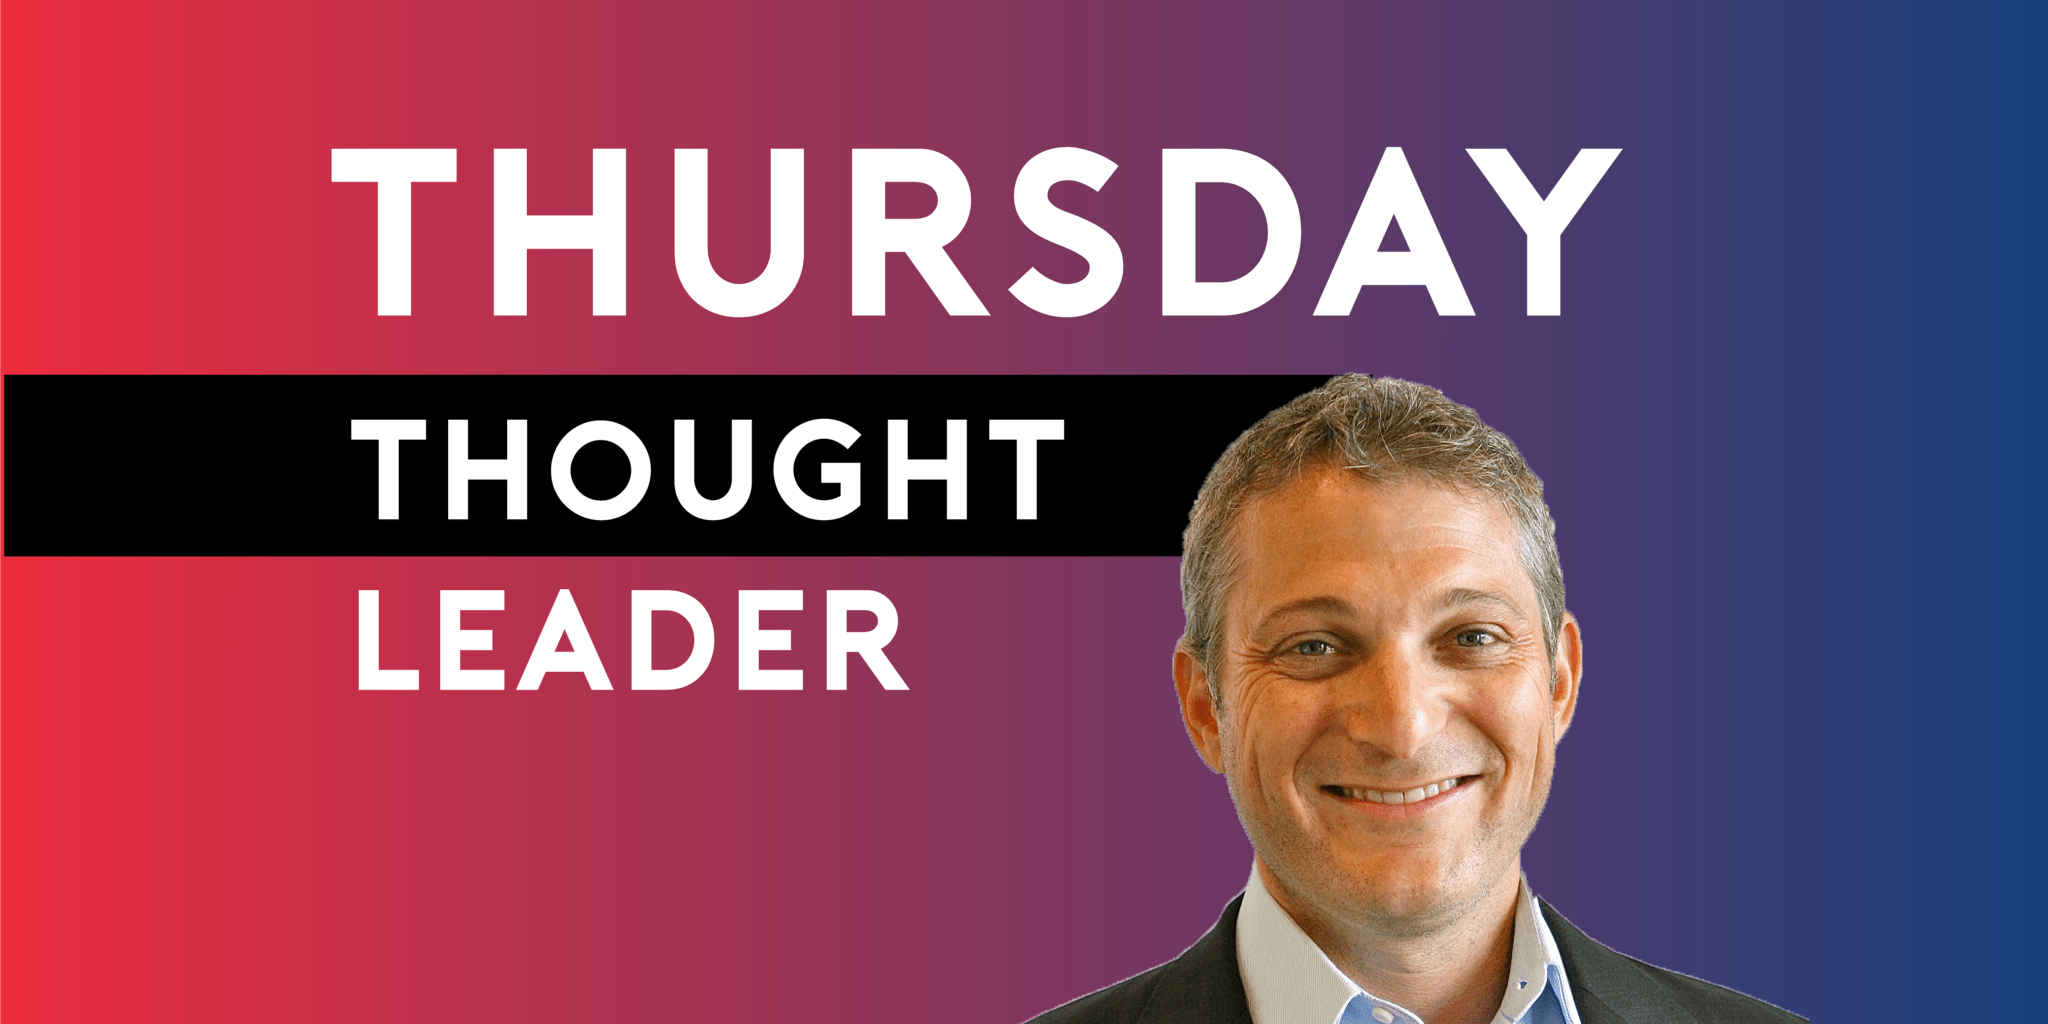 Max Drucker of Carpe Data is LegalNet Inc's Thursday Thought Leader